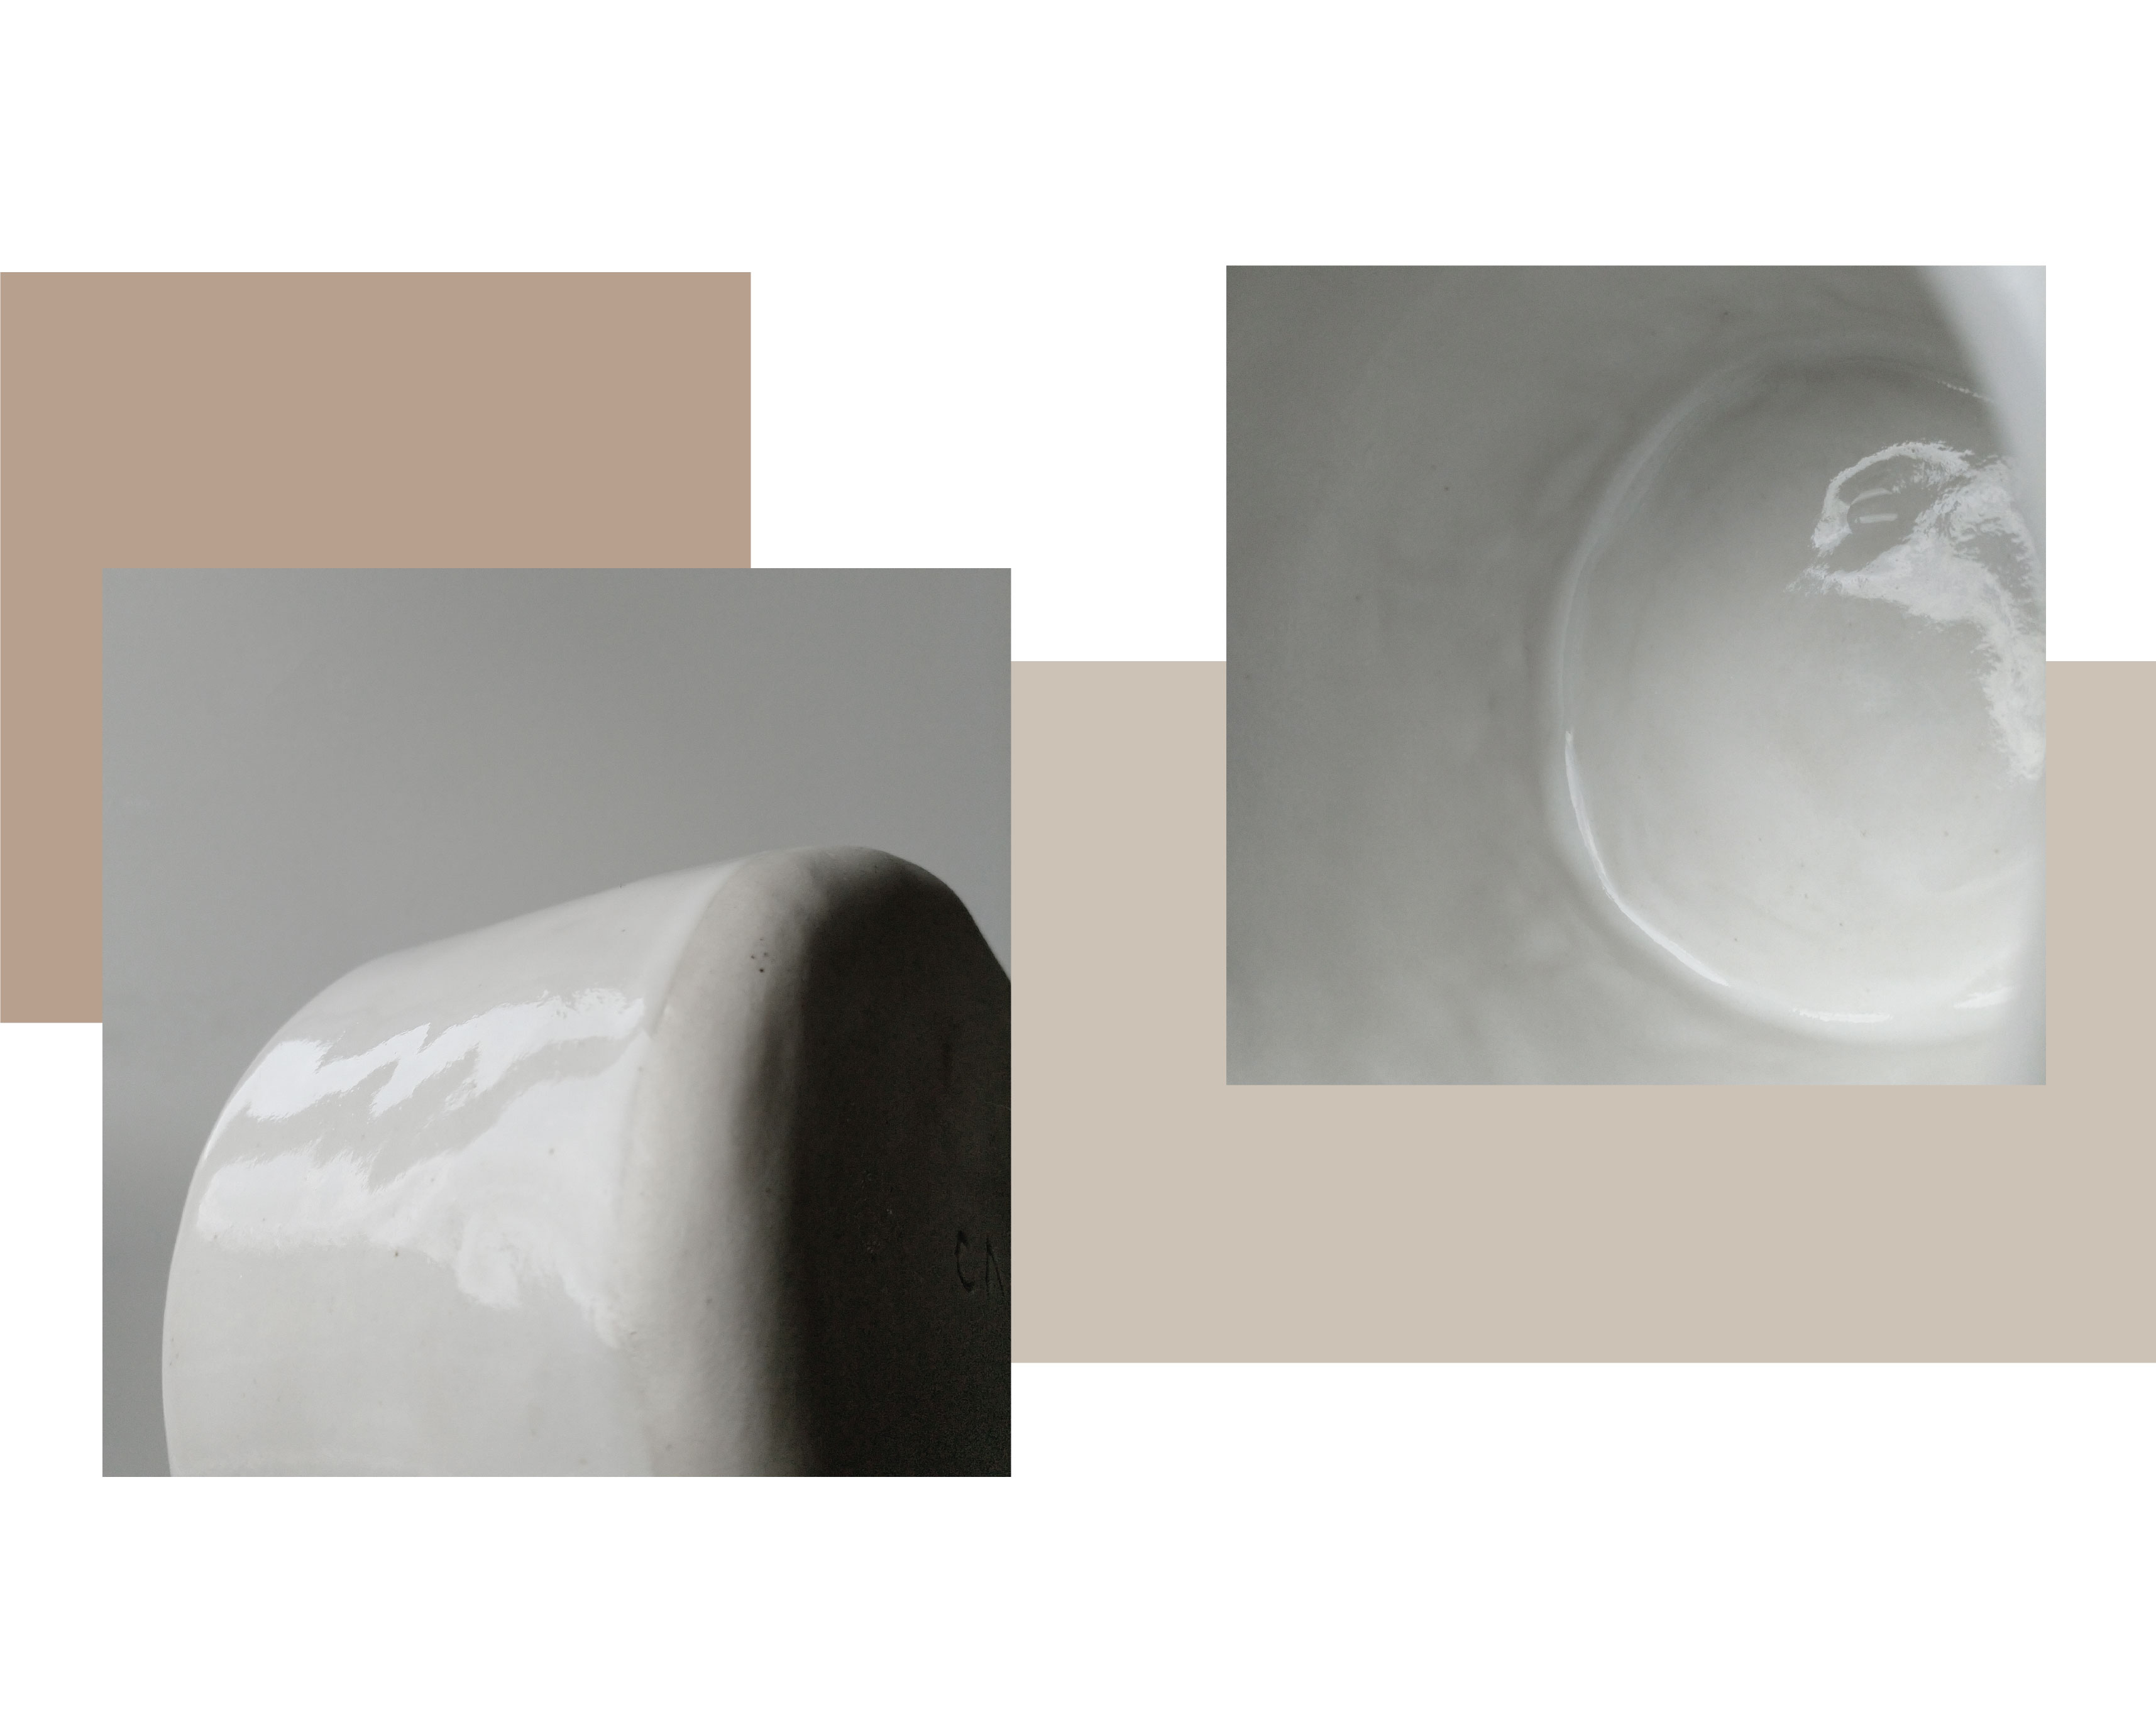 due immagini mostrano primo piano di superficie in ceramica bianca.